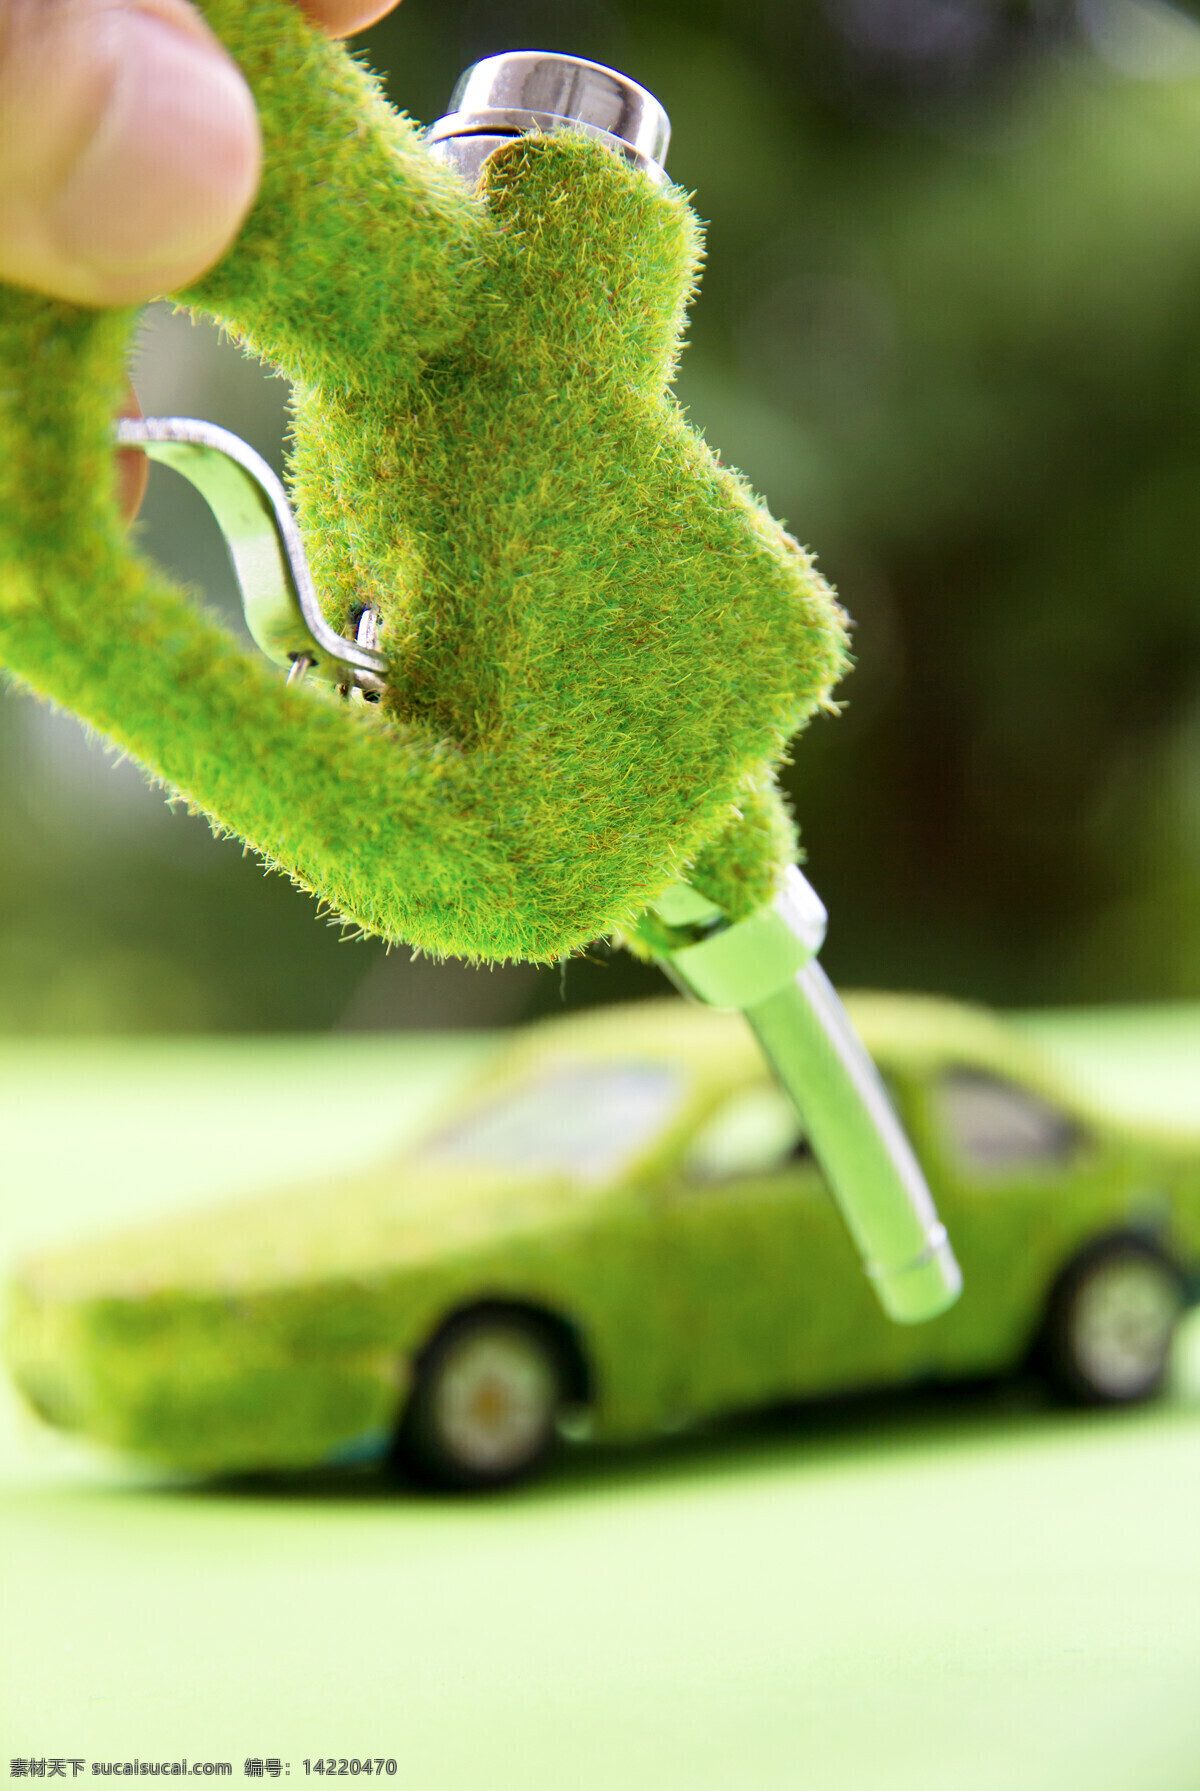 绿色环保轿车 加油的汽车 轿车 环保节能 生态环保 绿色环保 其他类别 生活百科